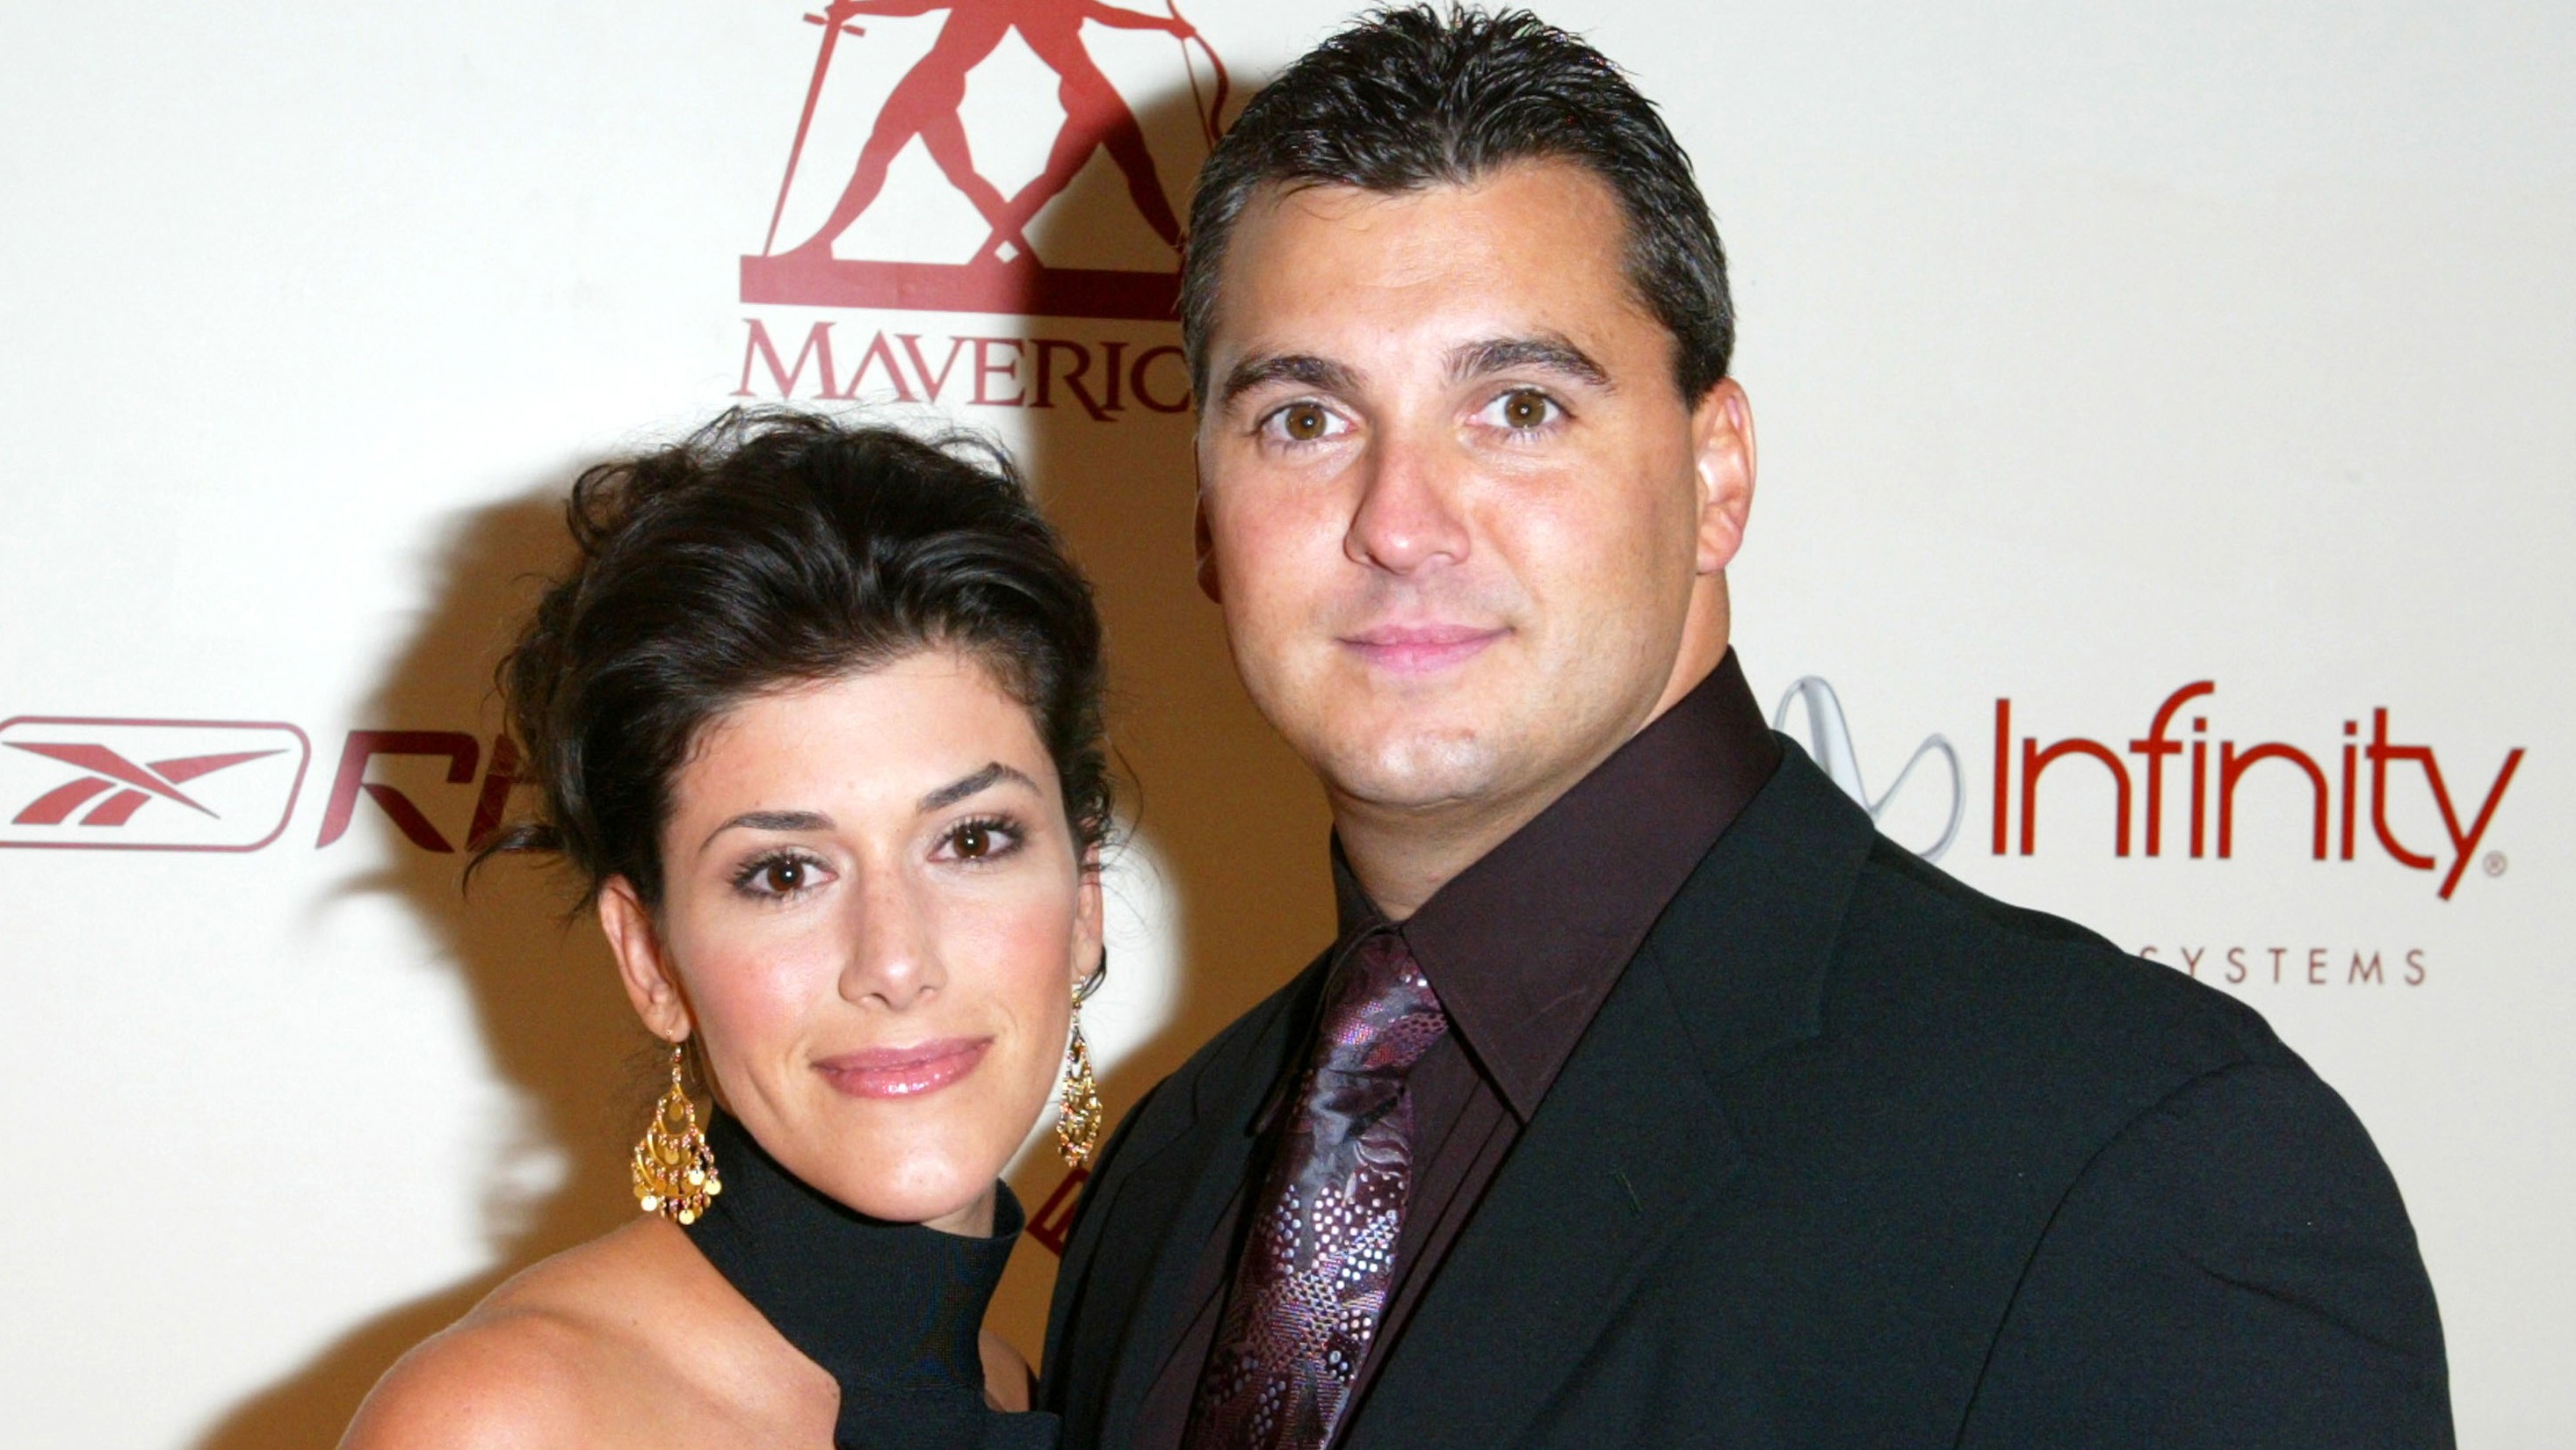 Marissa and her husband Shane McMahon